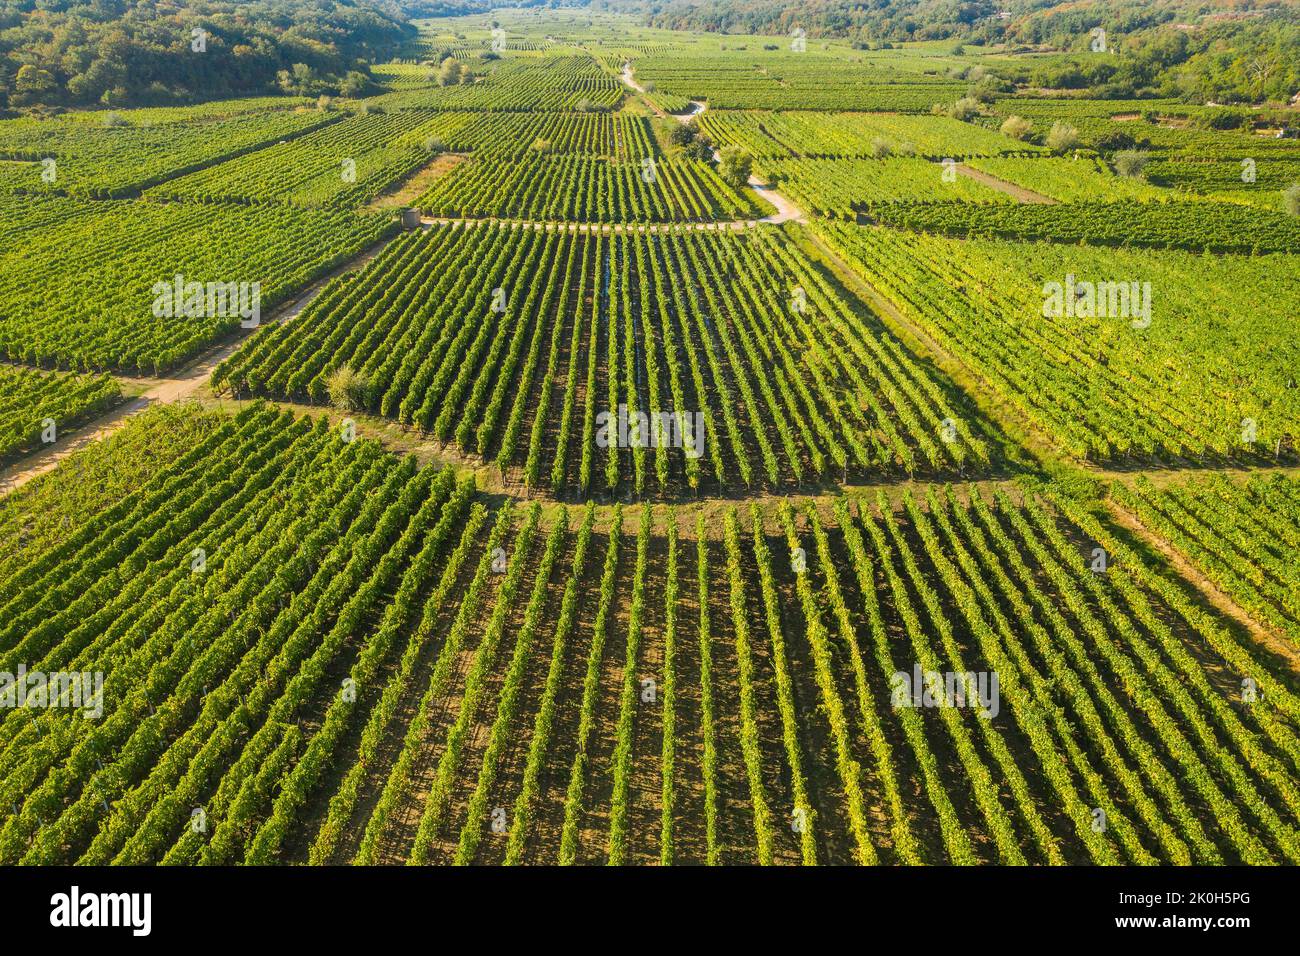 Vignoble de Vrbnik, vue aérienne, Île de Krk, Croatie Banque D'Images